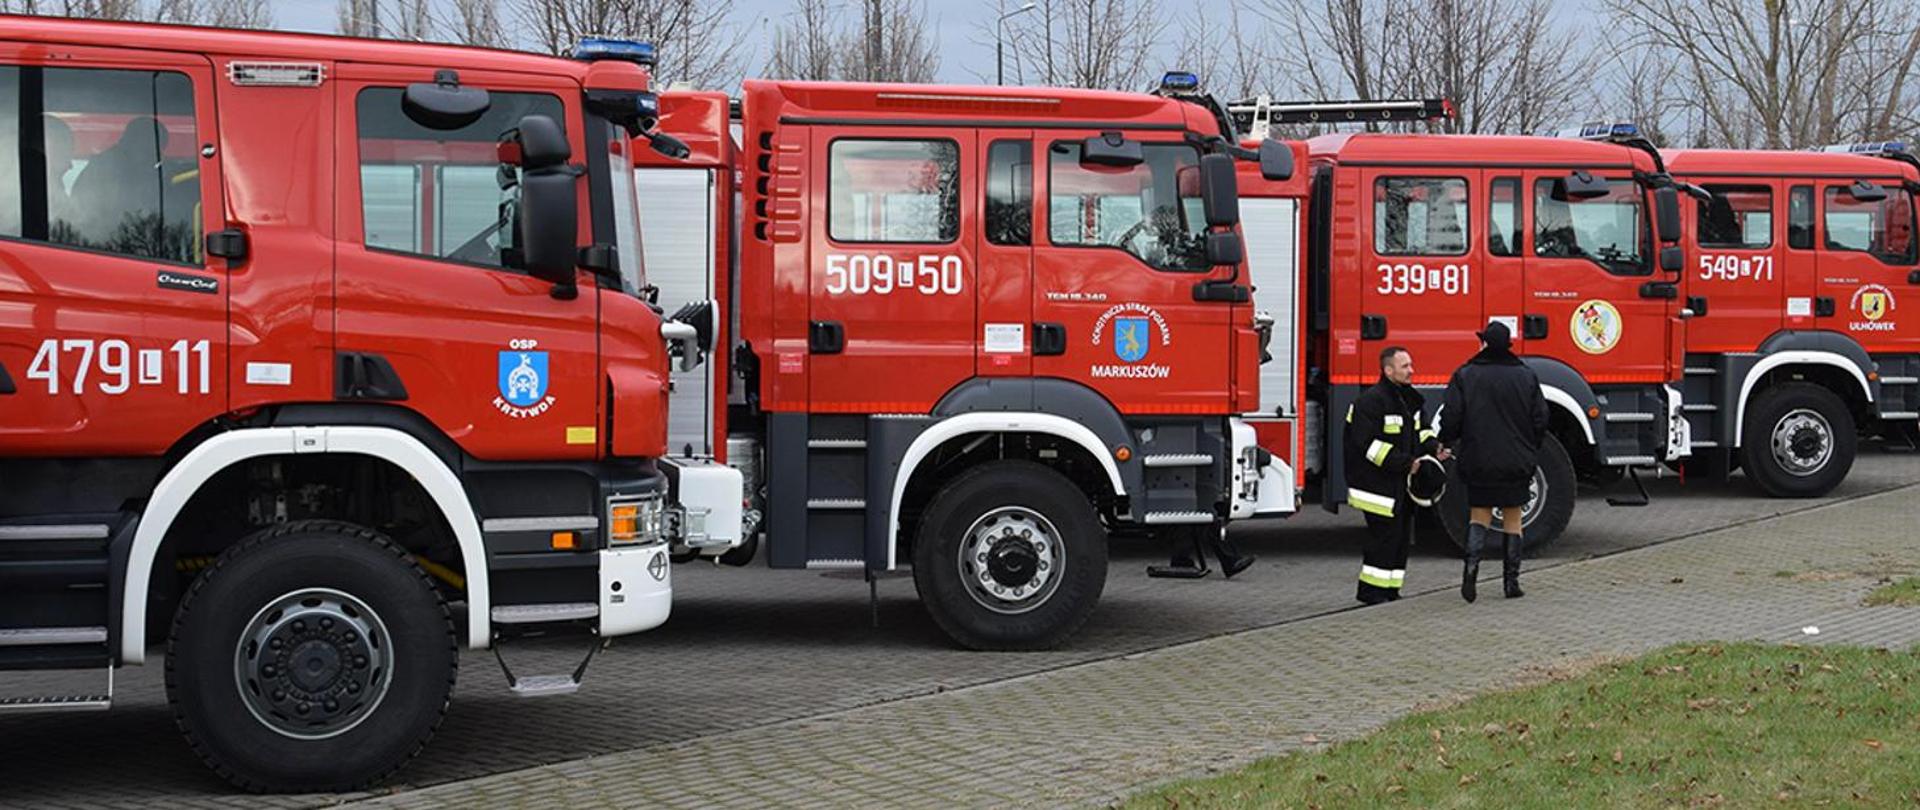 Zdjęcie przedstawia cztery samochody pożarnicze ustawione na placu do przekazania dla jednostek OSP.